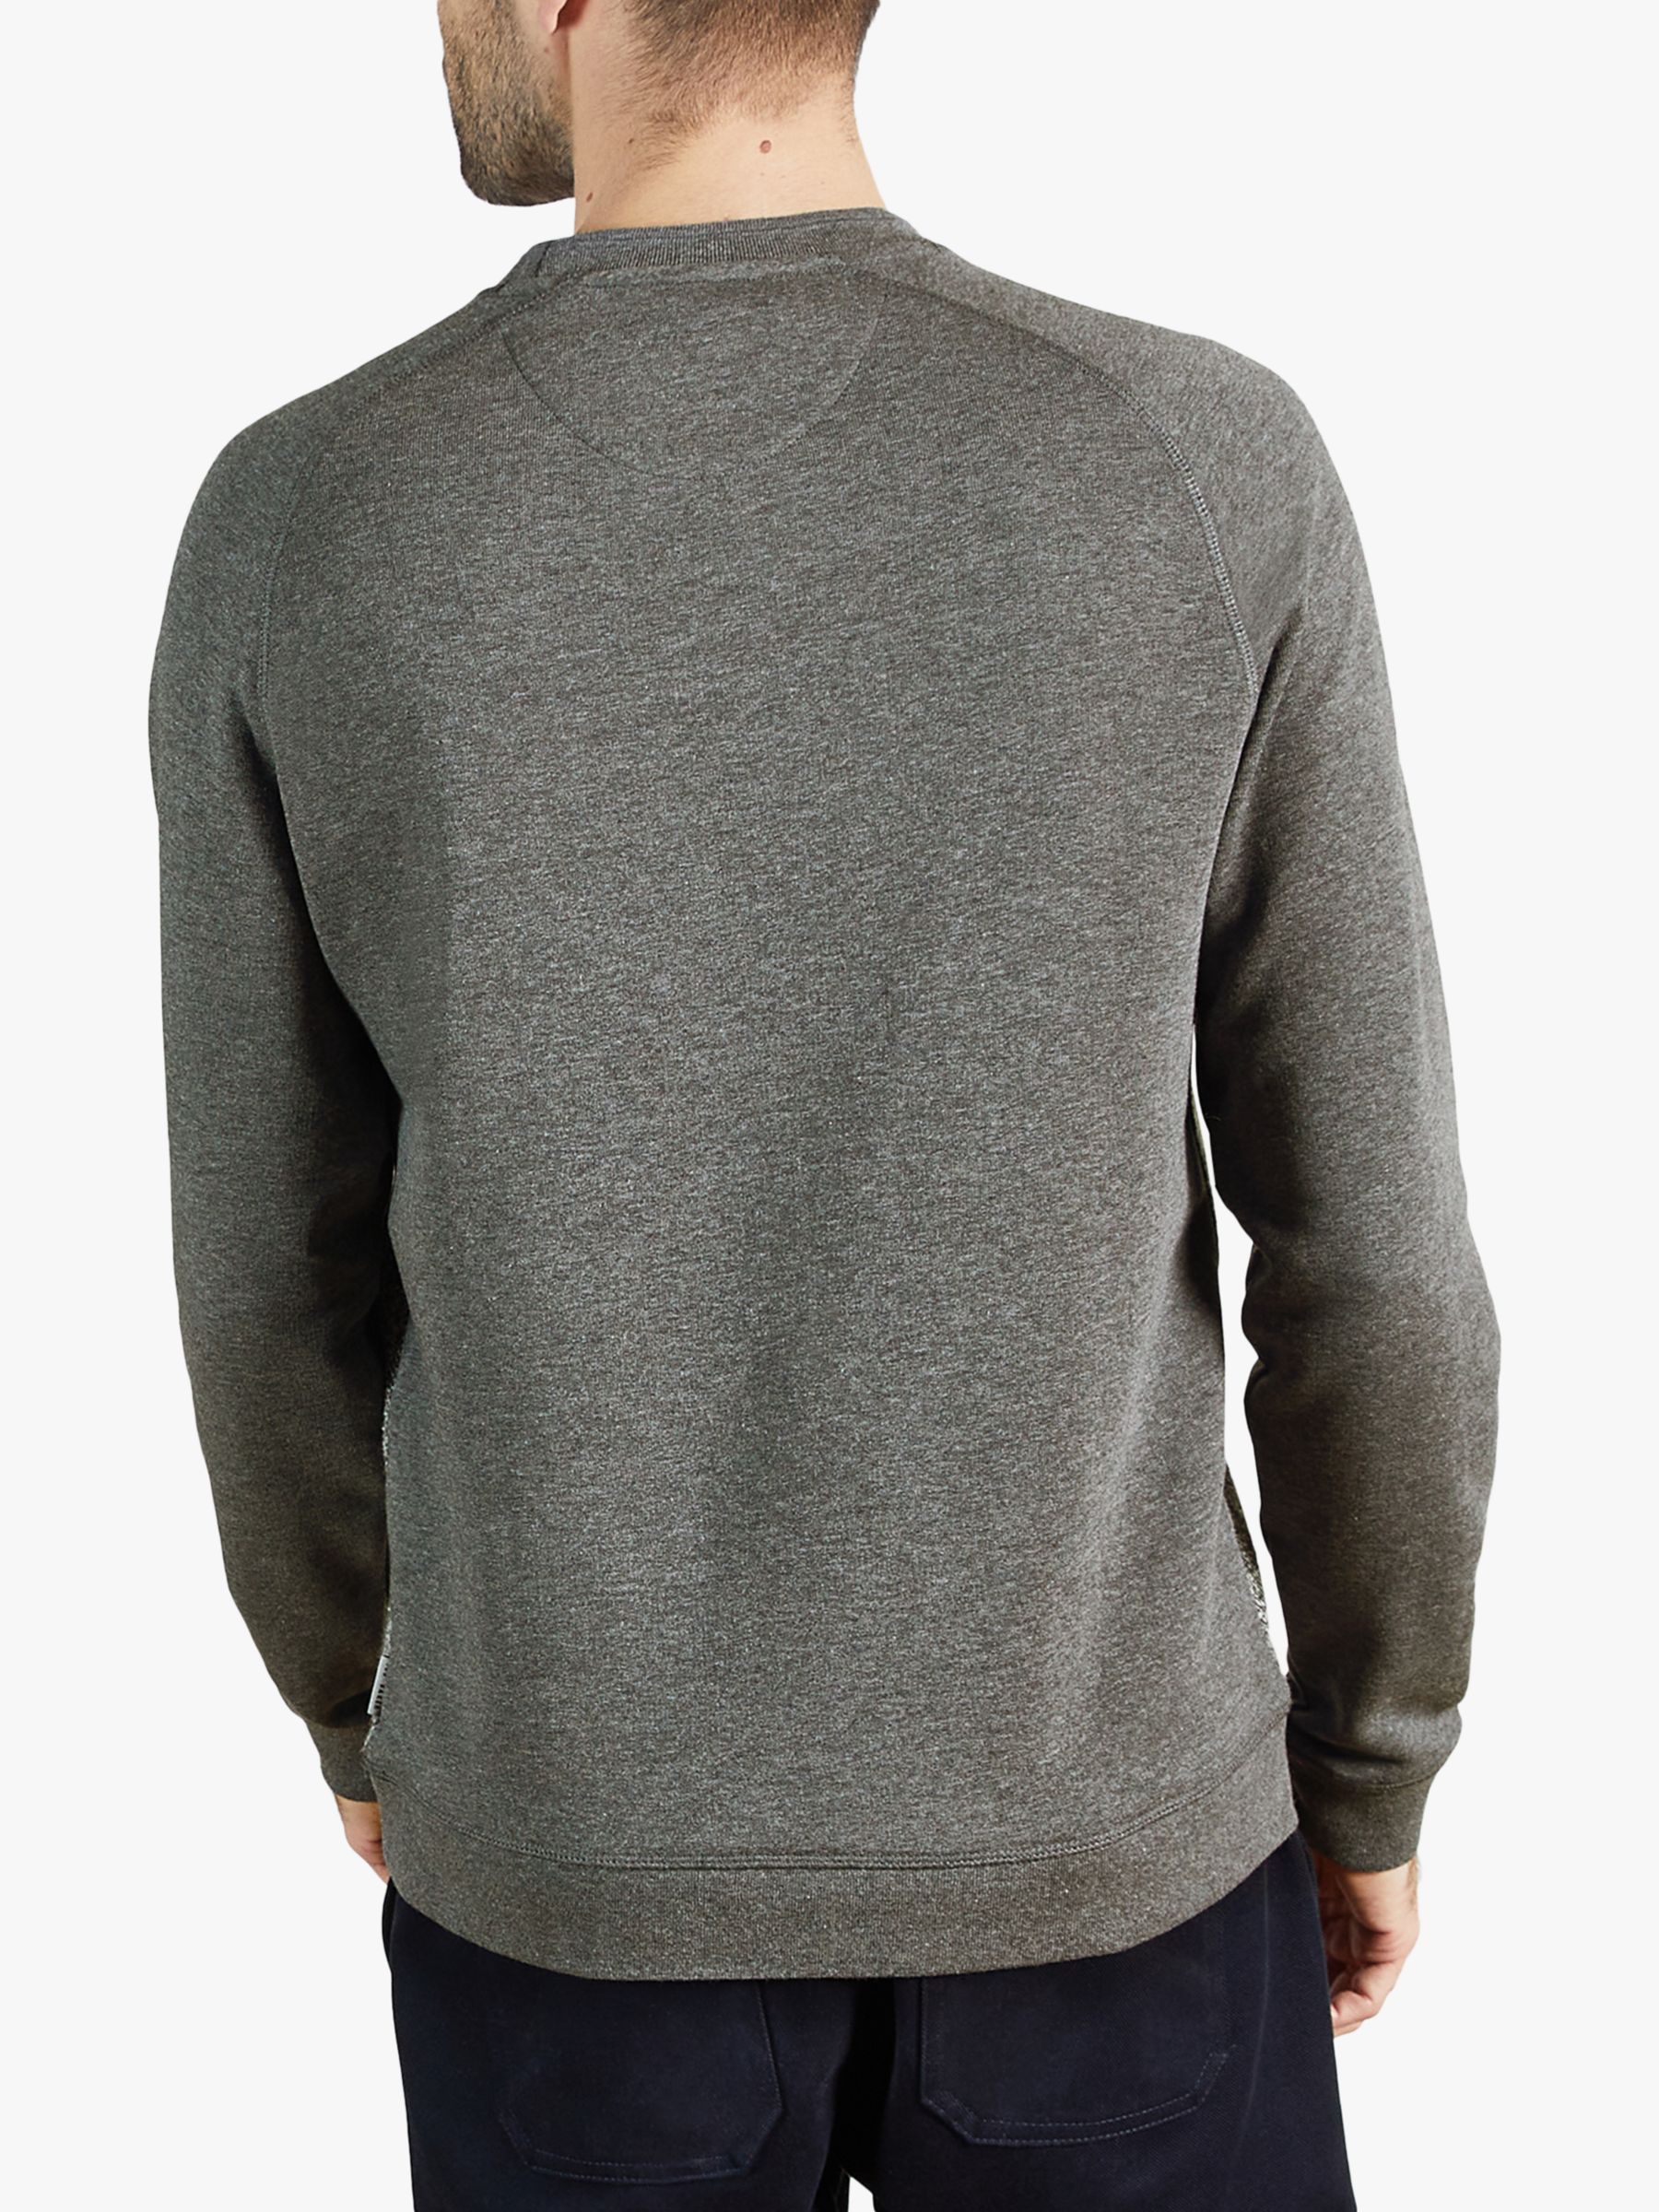 Ted Baker Props Textured Sweatshirt, Charcoal